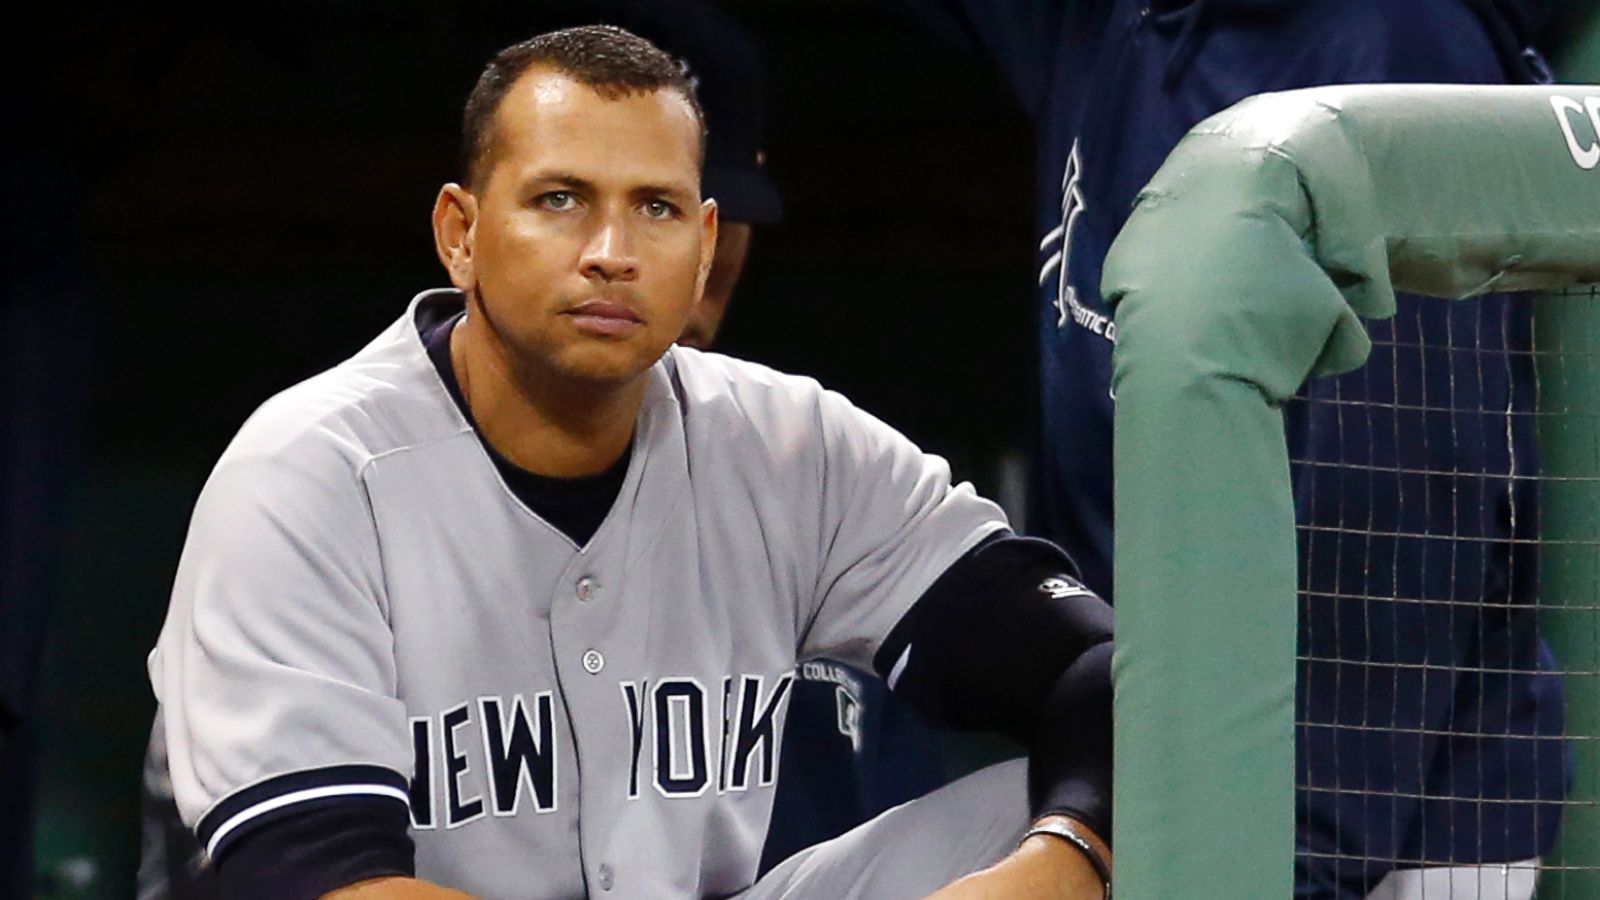 Yankees Slugger Alex Rodriguez Apologizes for Misconduct